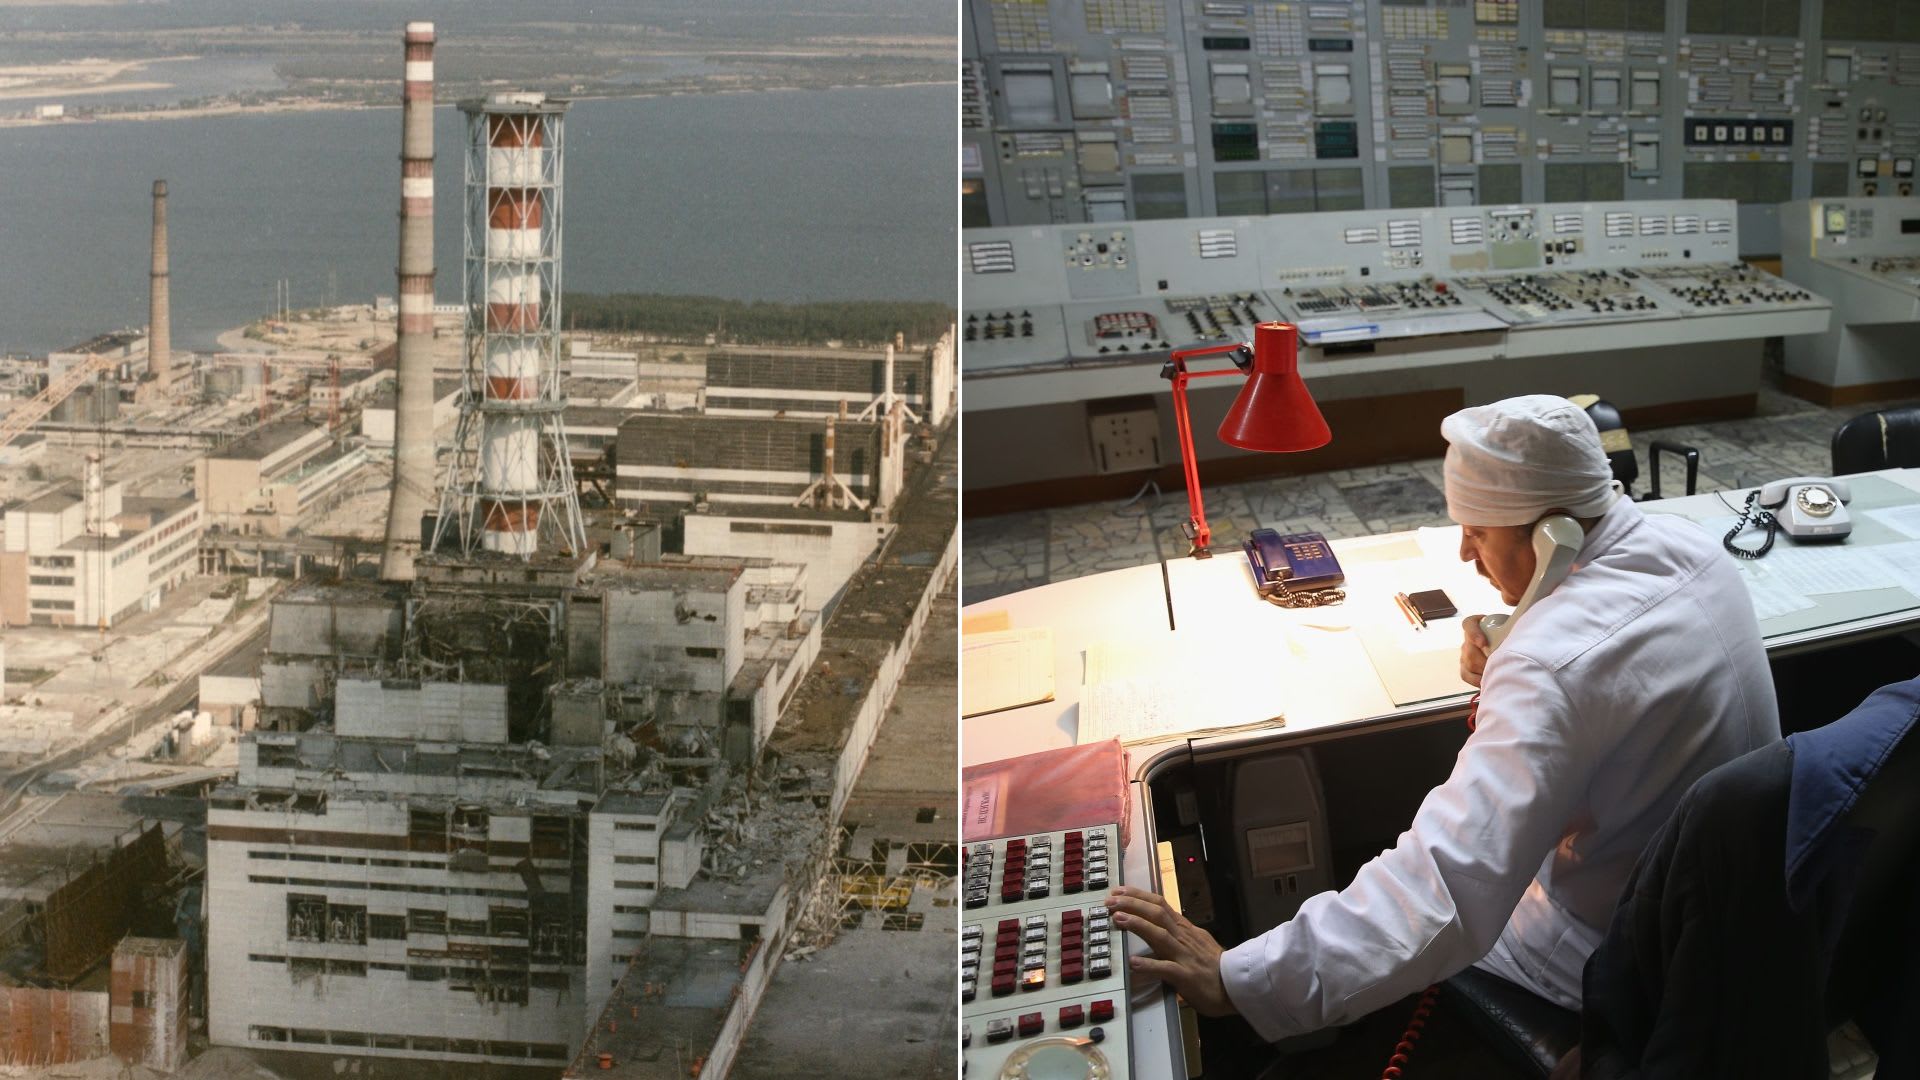 Hrozí v Černobylu další havárie?